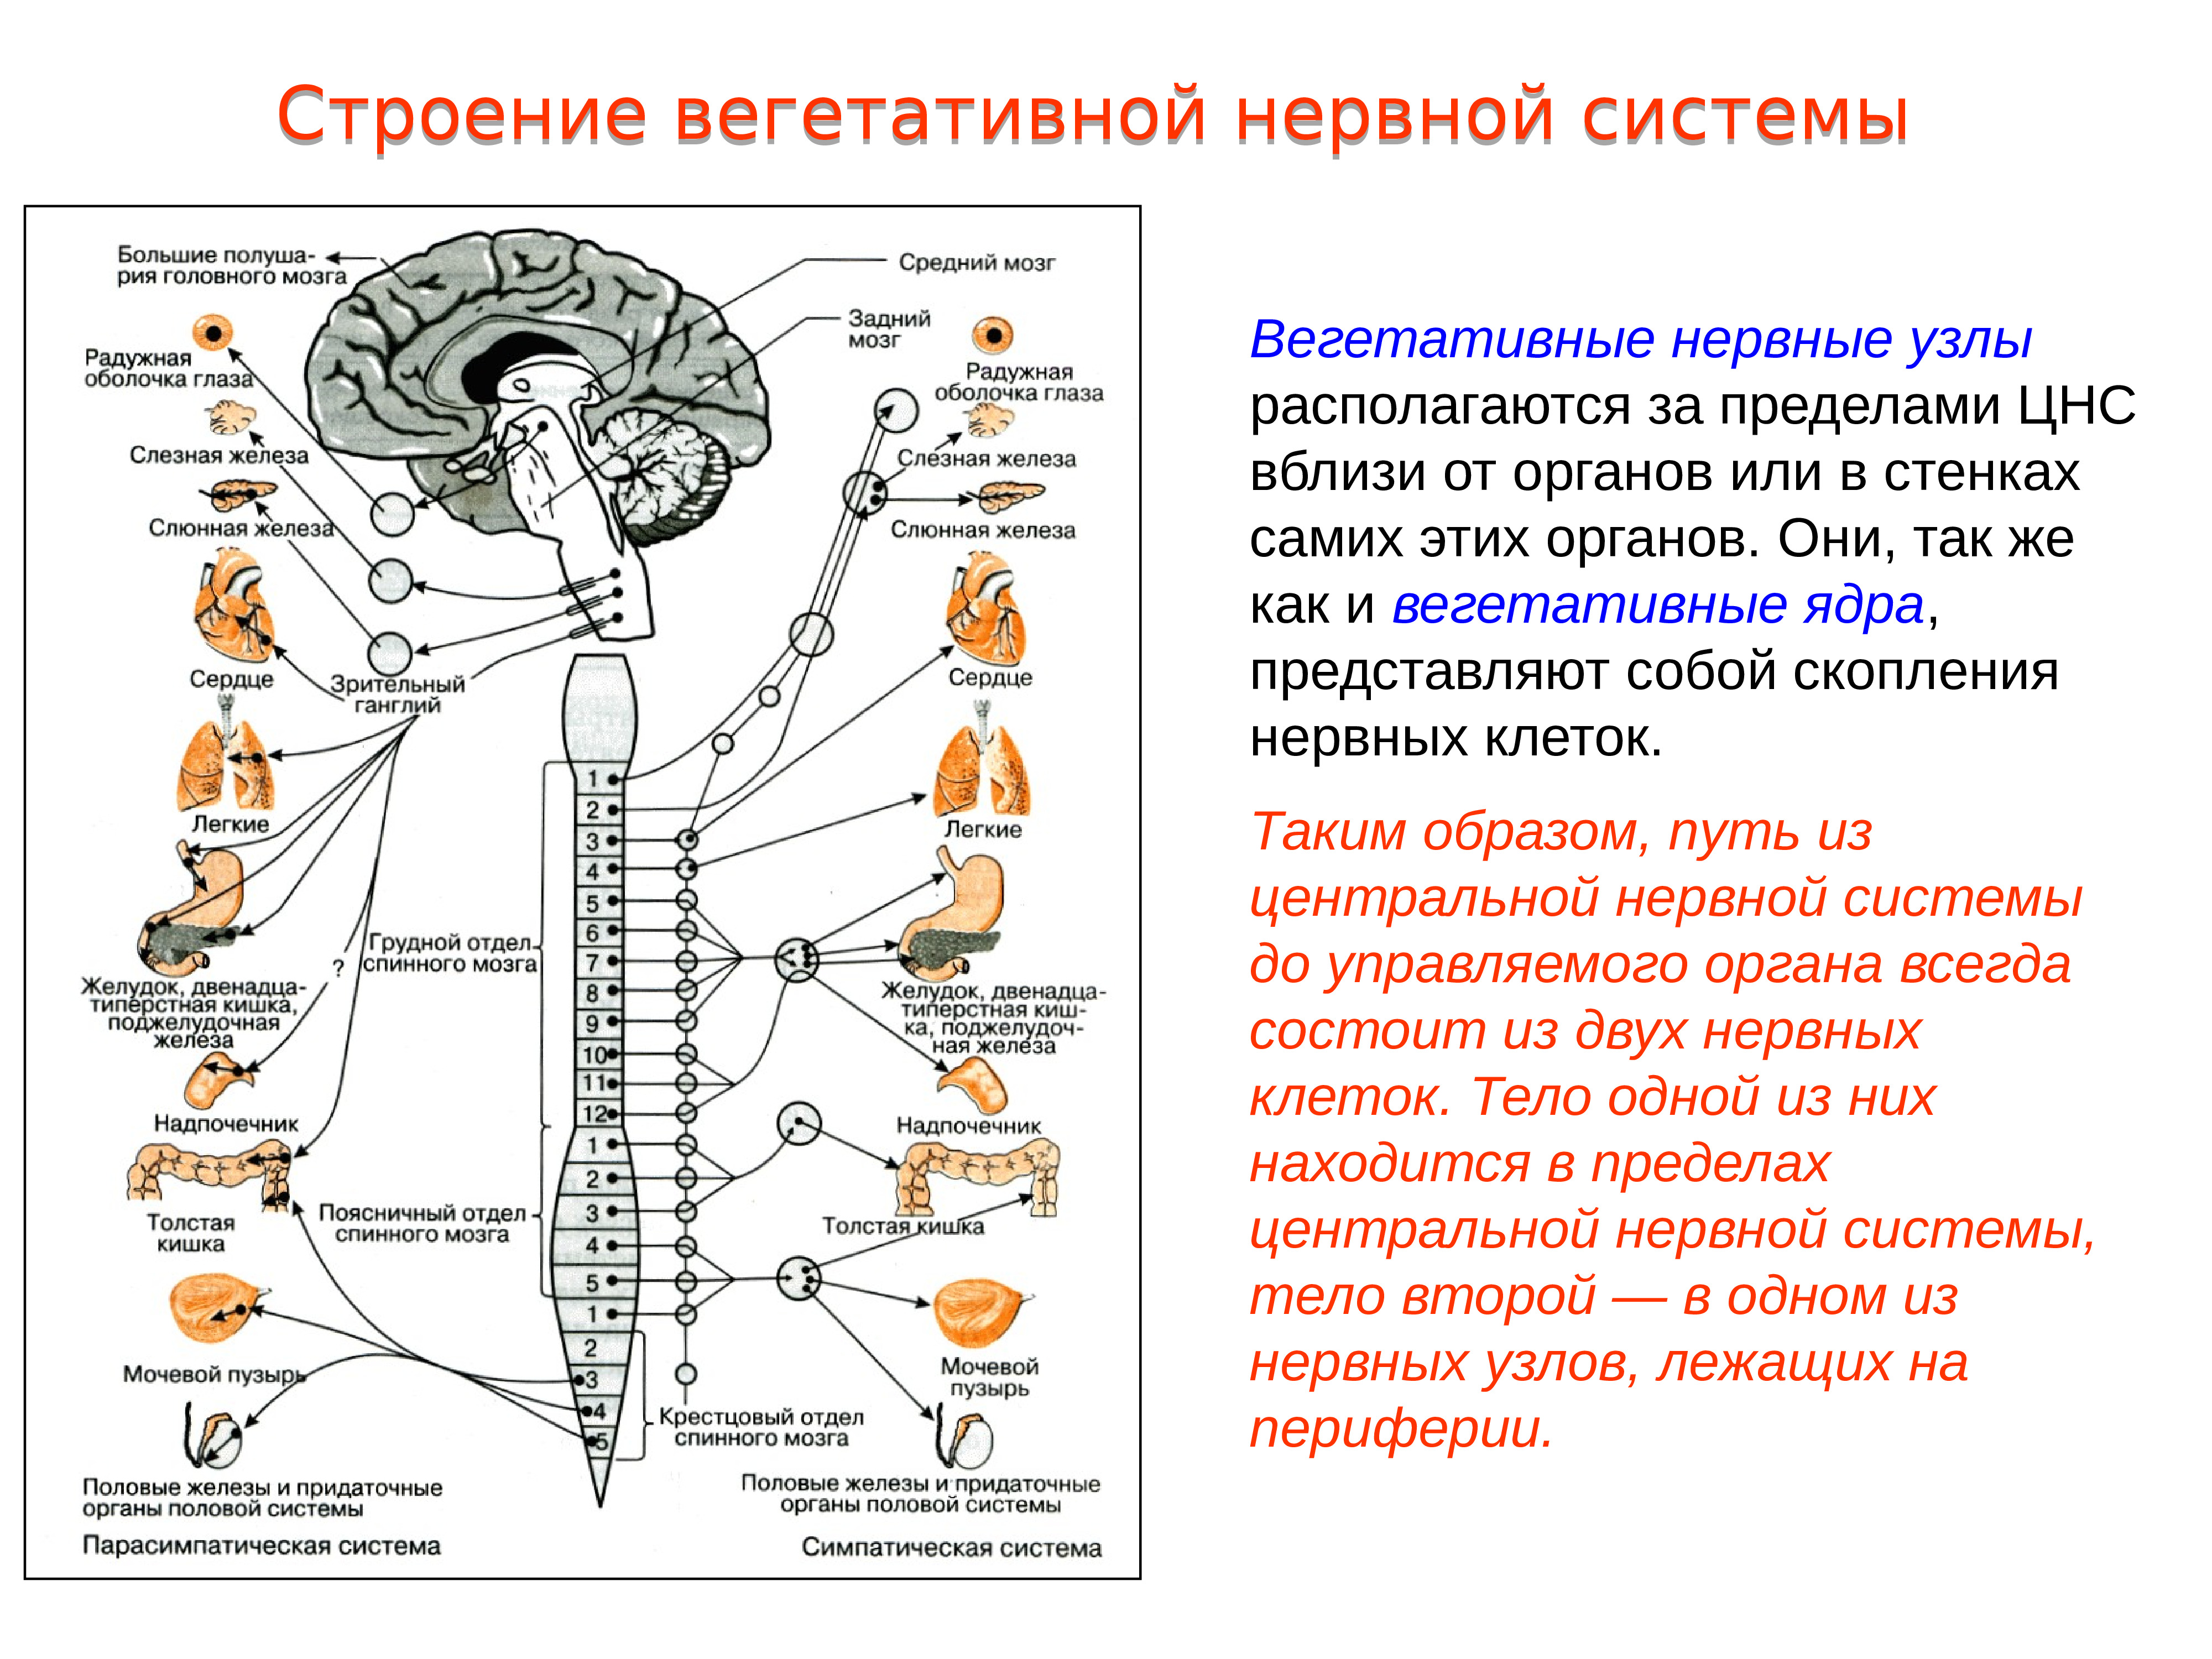 Рецепторы какой отдел нервной системы. Строение вегетативного нервного узла. В Центральном отделе ядра вегетативной нервной системы. Строение вегетативной системы с нервными узлами. Вегетативная нервная система схема спинного мозга.